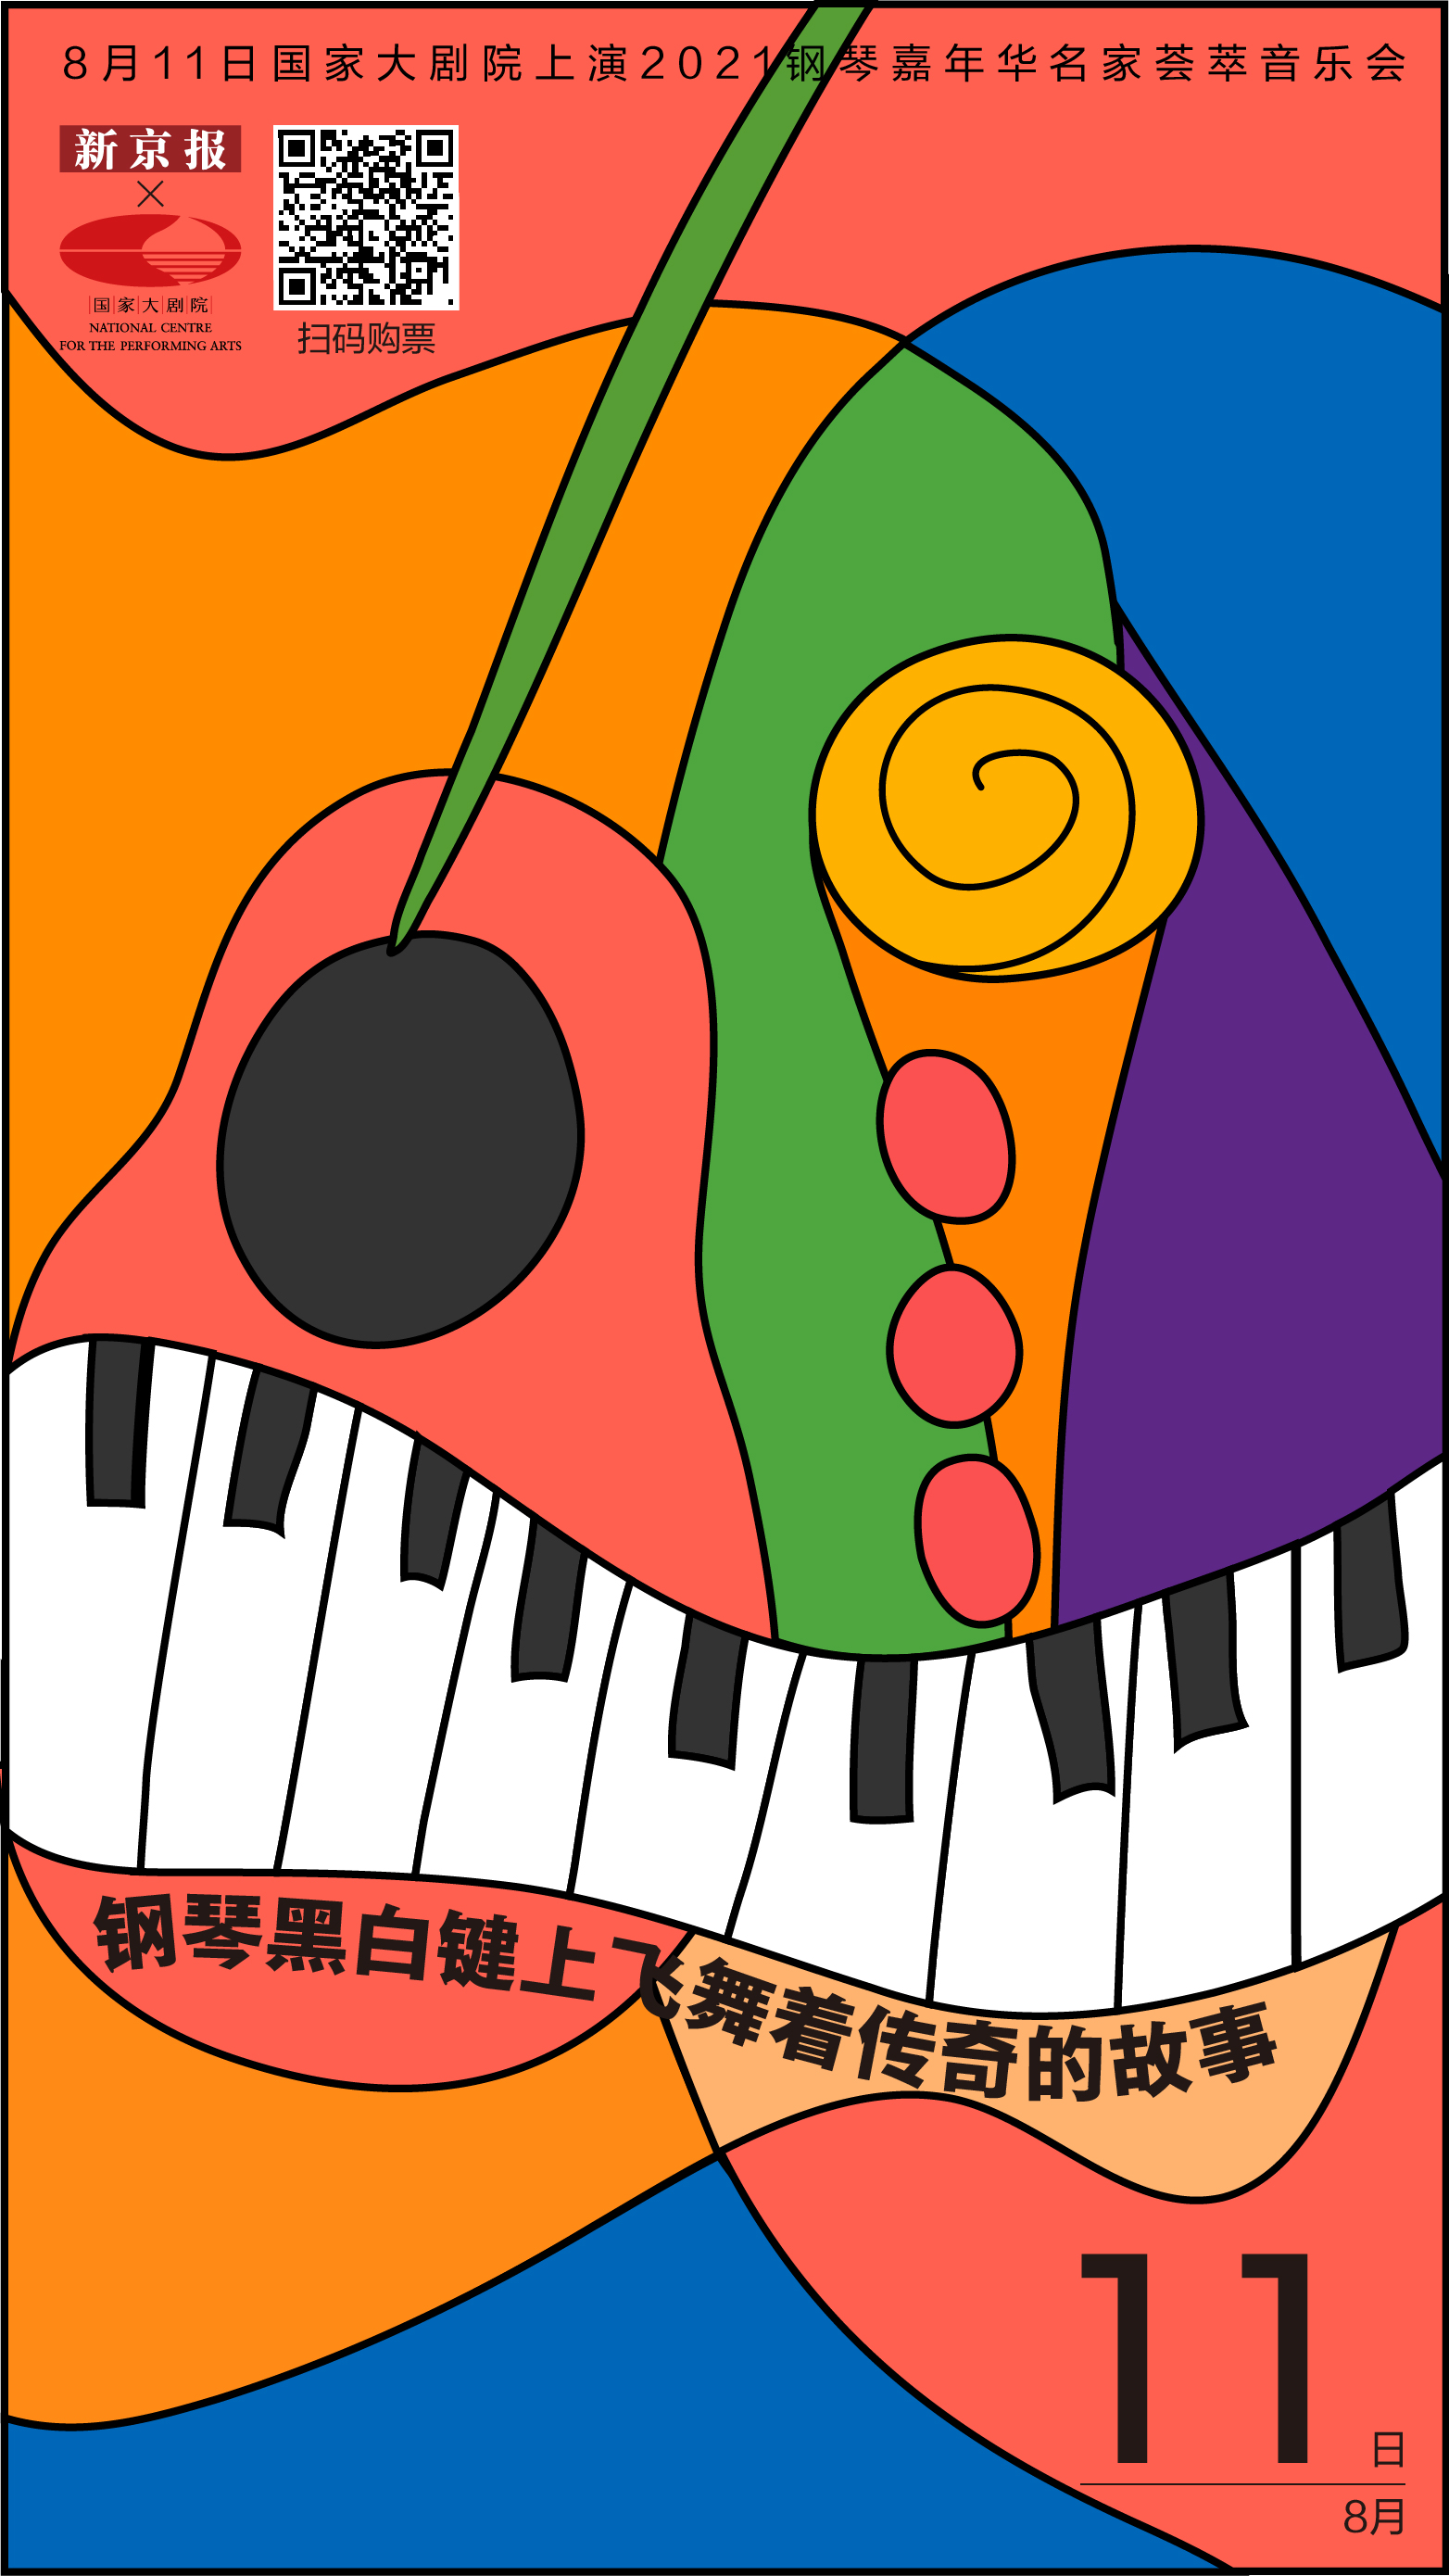 钢琴黑白琴键上飞舞着传奇的故事 新京报 国家大剧院